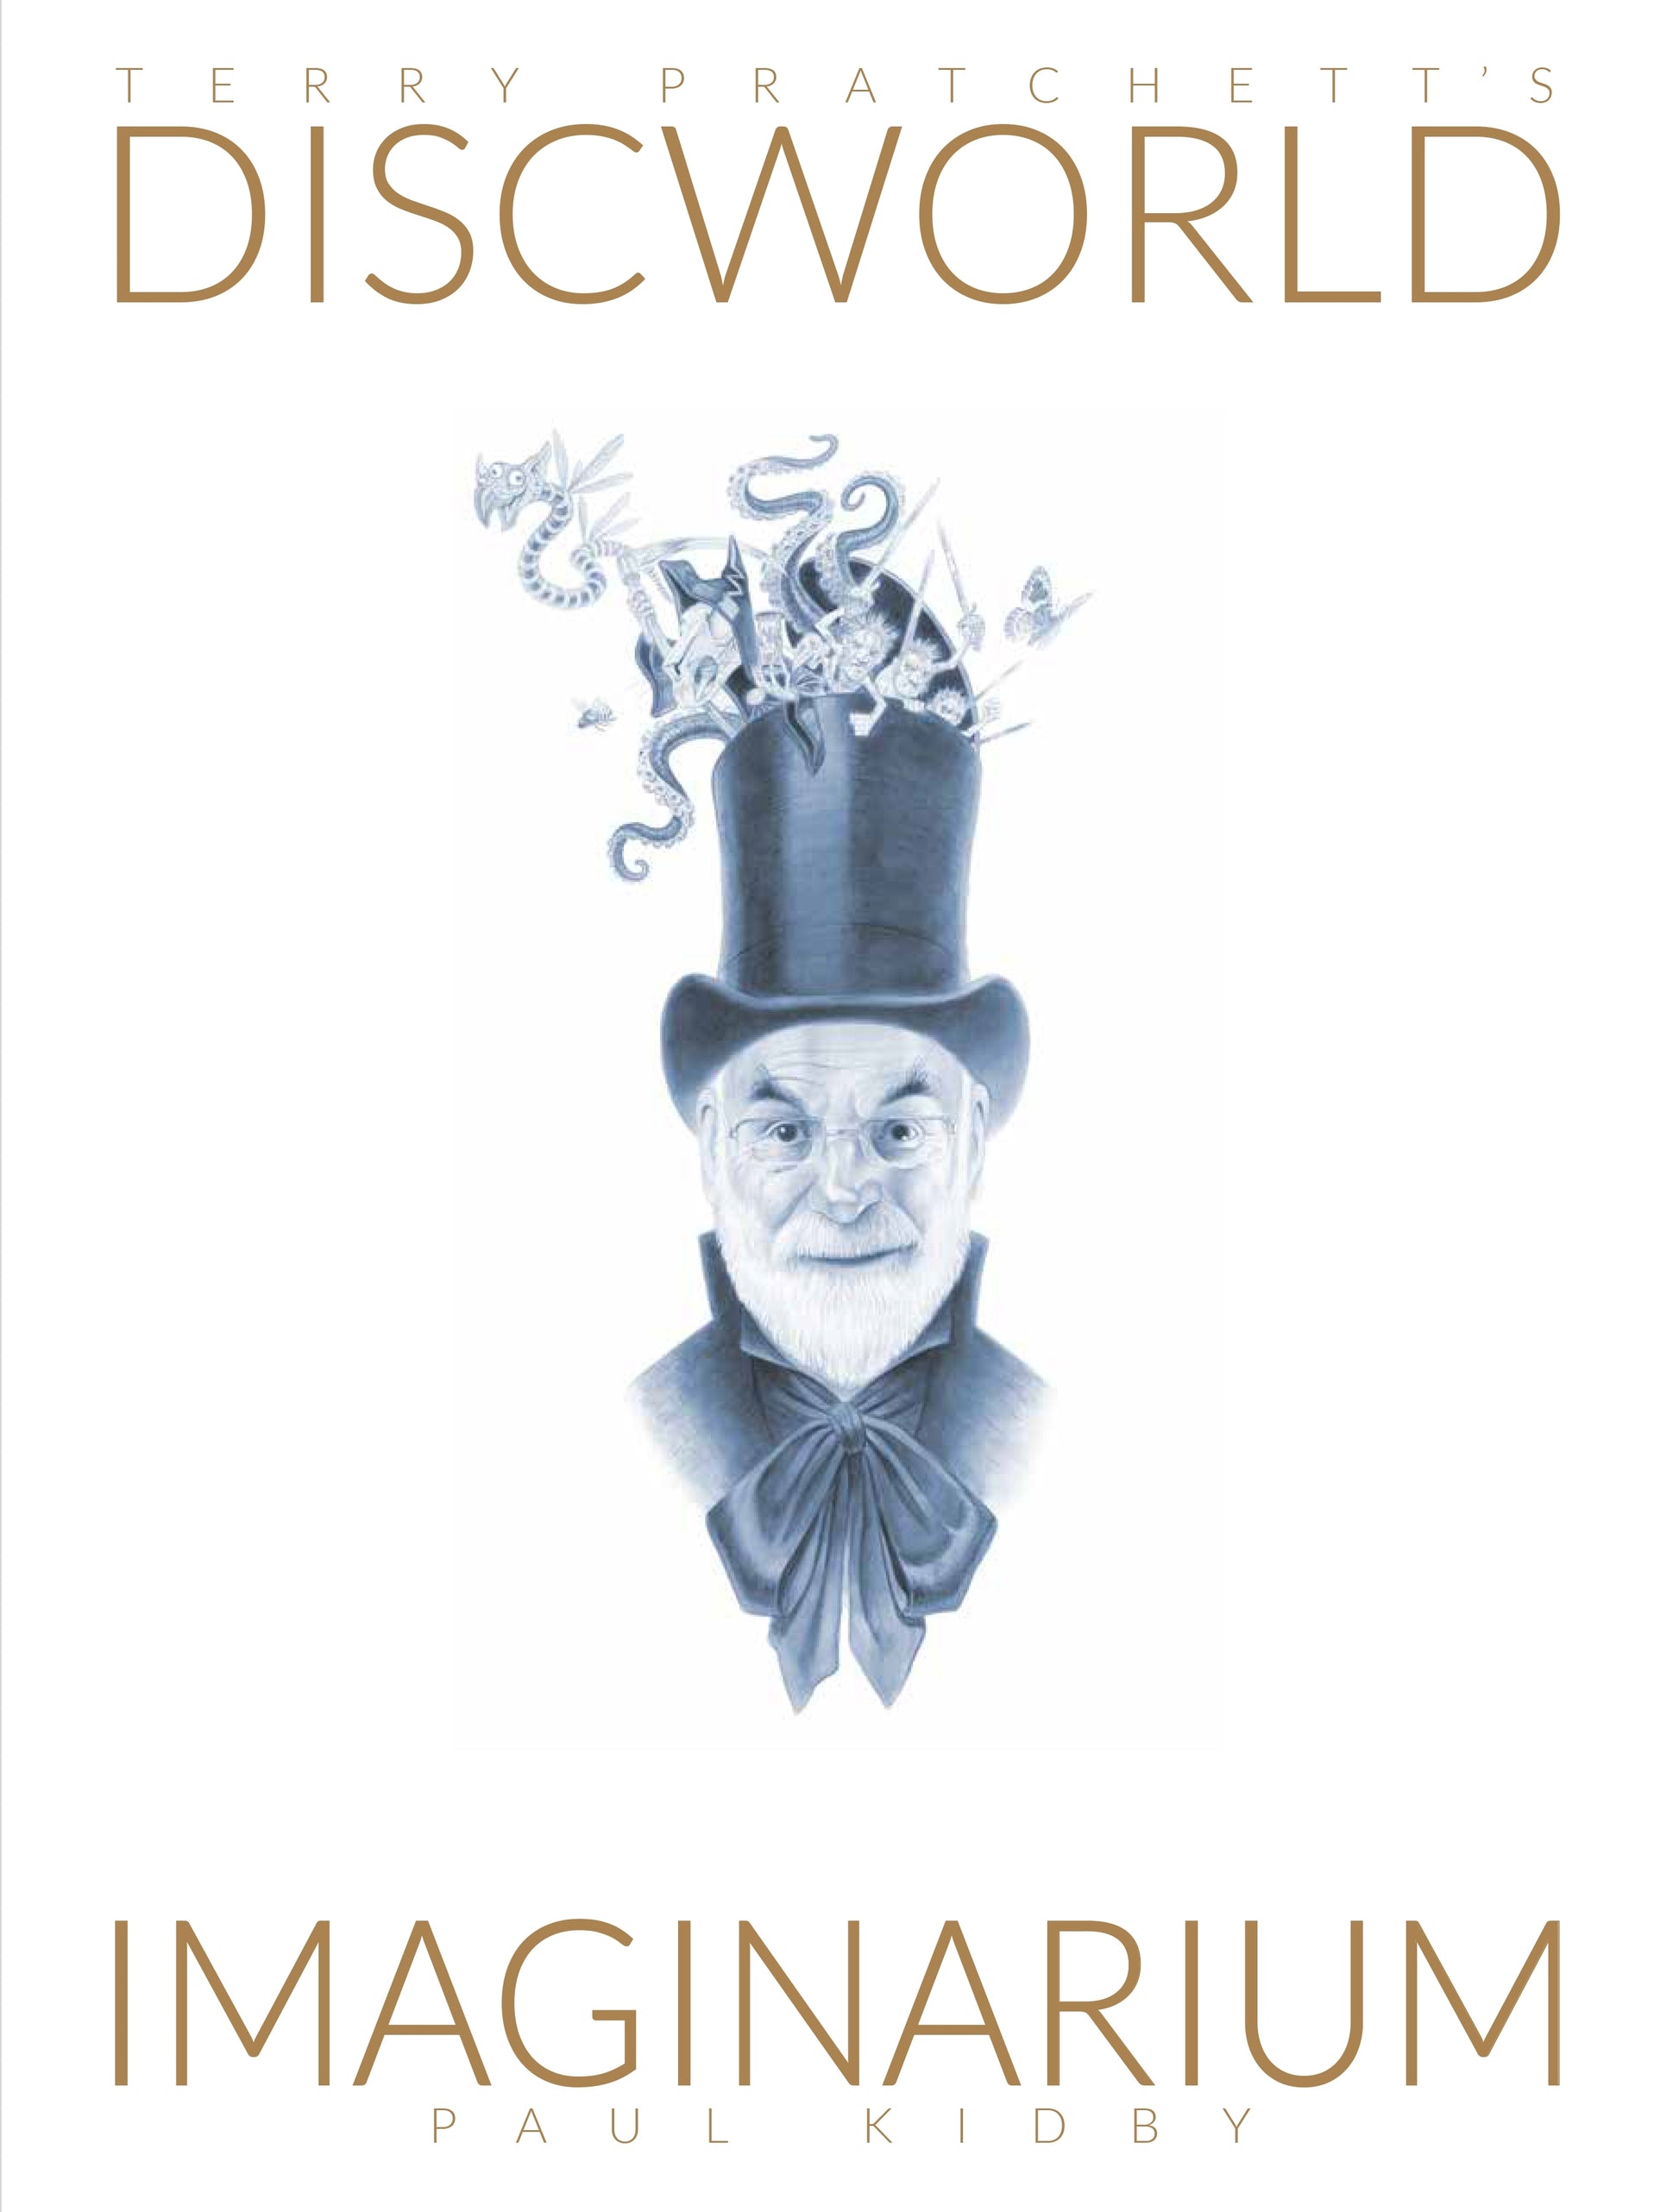 Terry Pratchett's Discworld Imaginarium by Paul Kidby